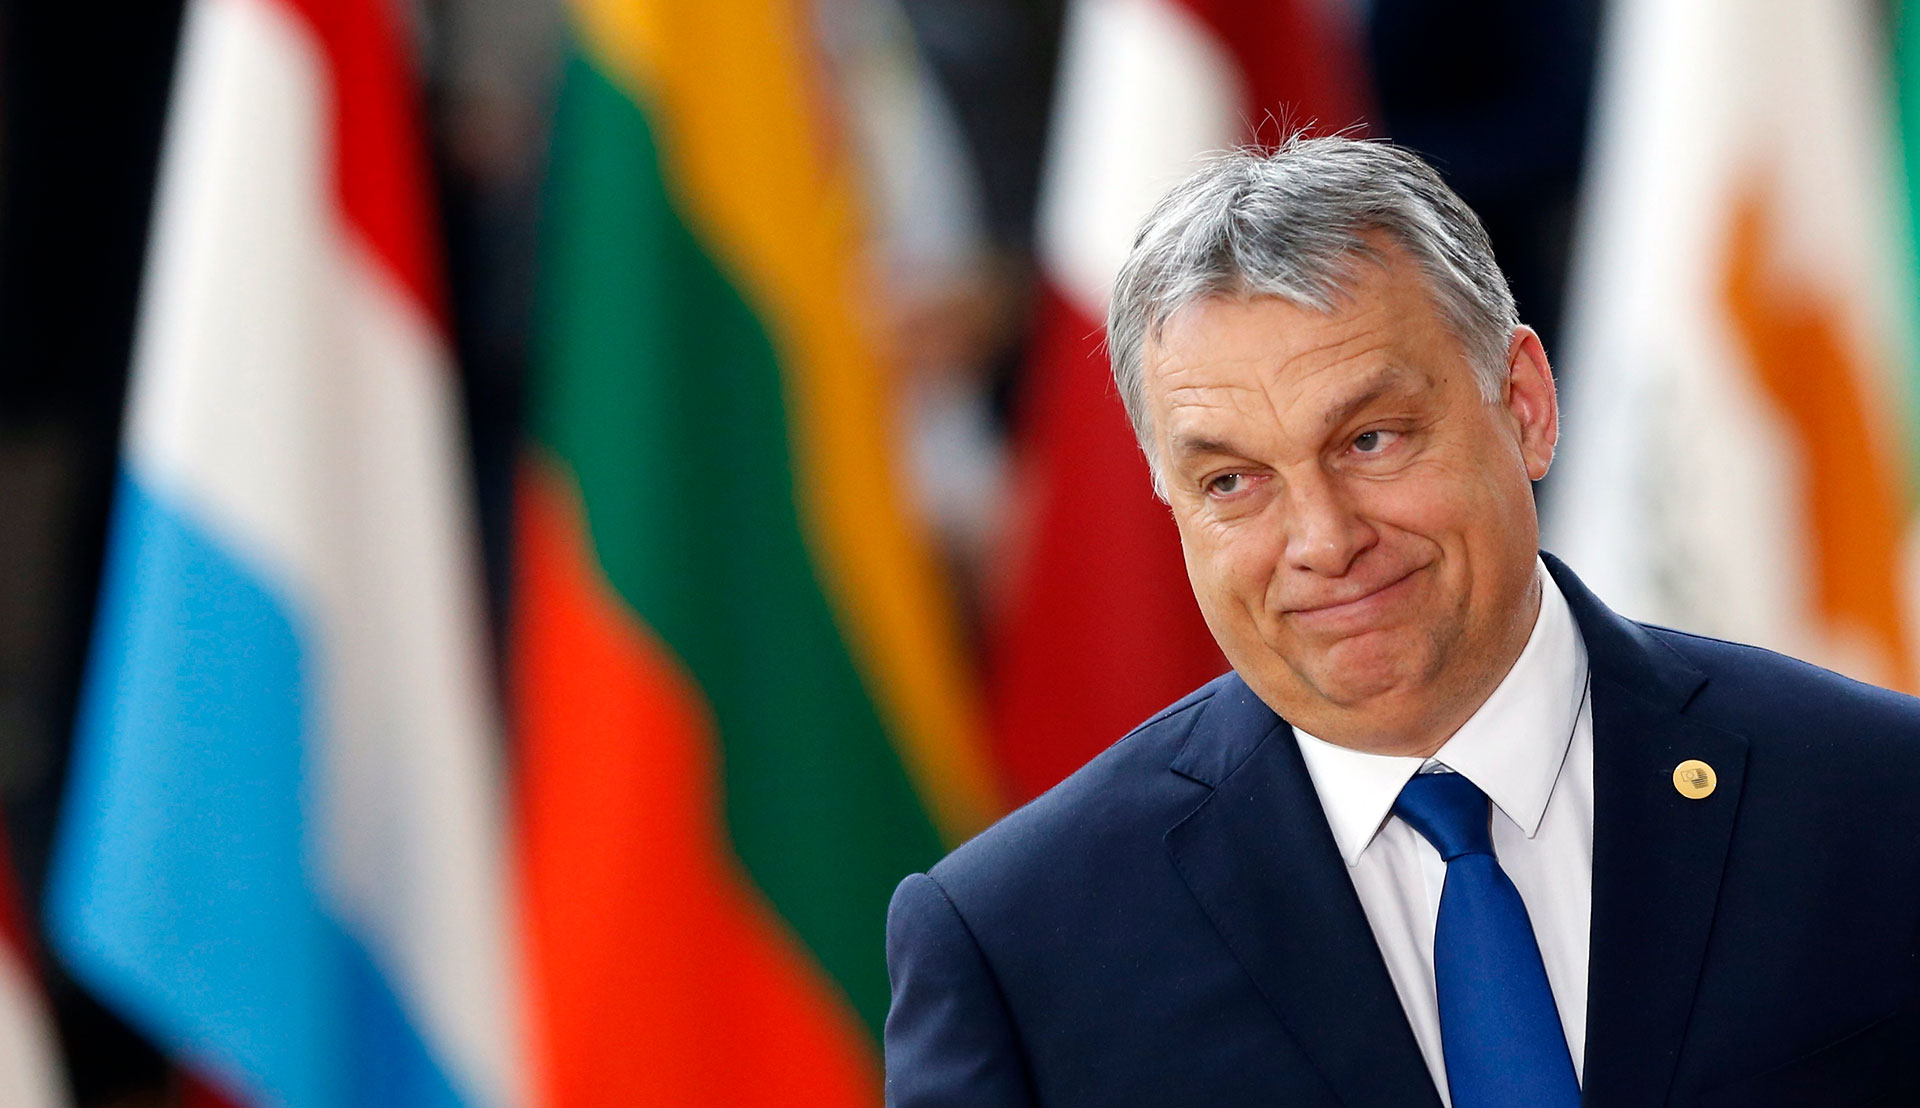 Ουγγαρία: Απαιτεί να μην ληφθεί απόφαση ενταξιακής διαδικασίας στην ΕΕ για την Ουκρανία